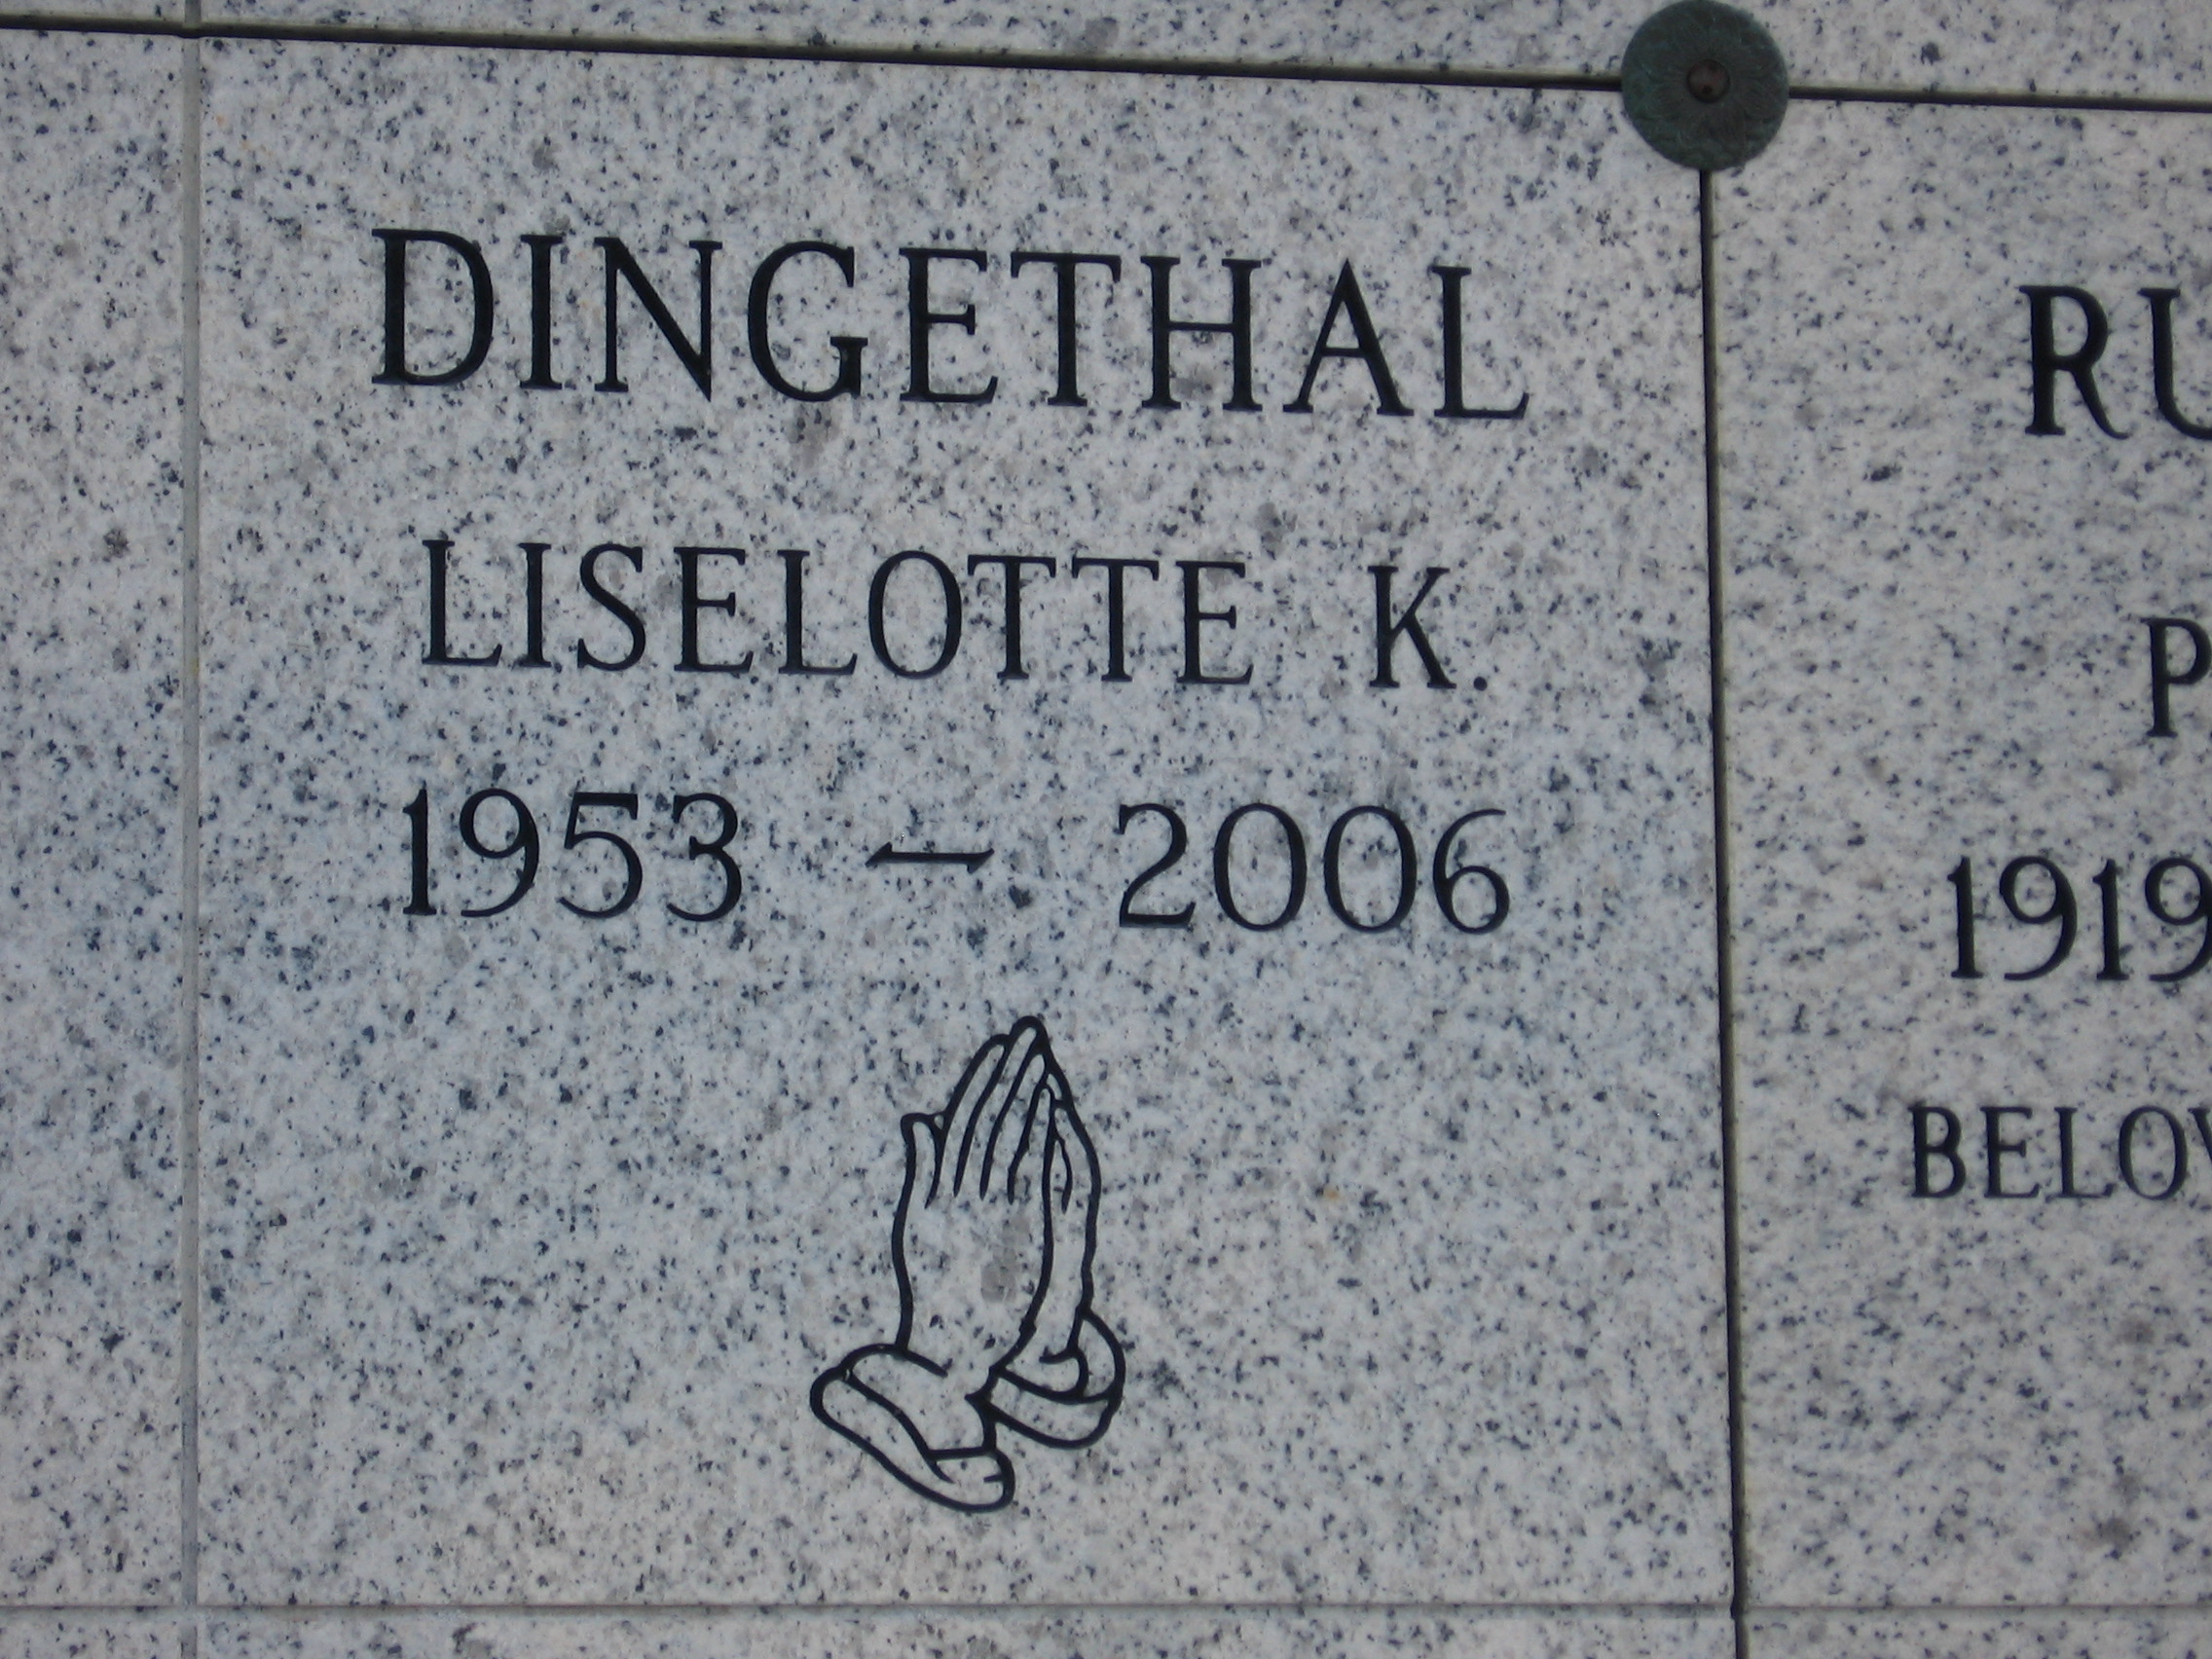 Liselotte K Dingethal